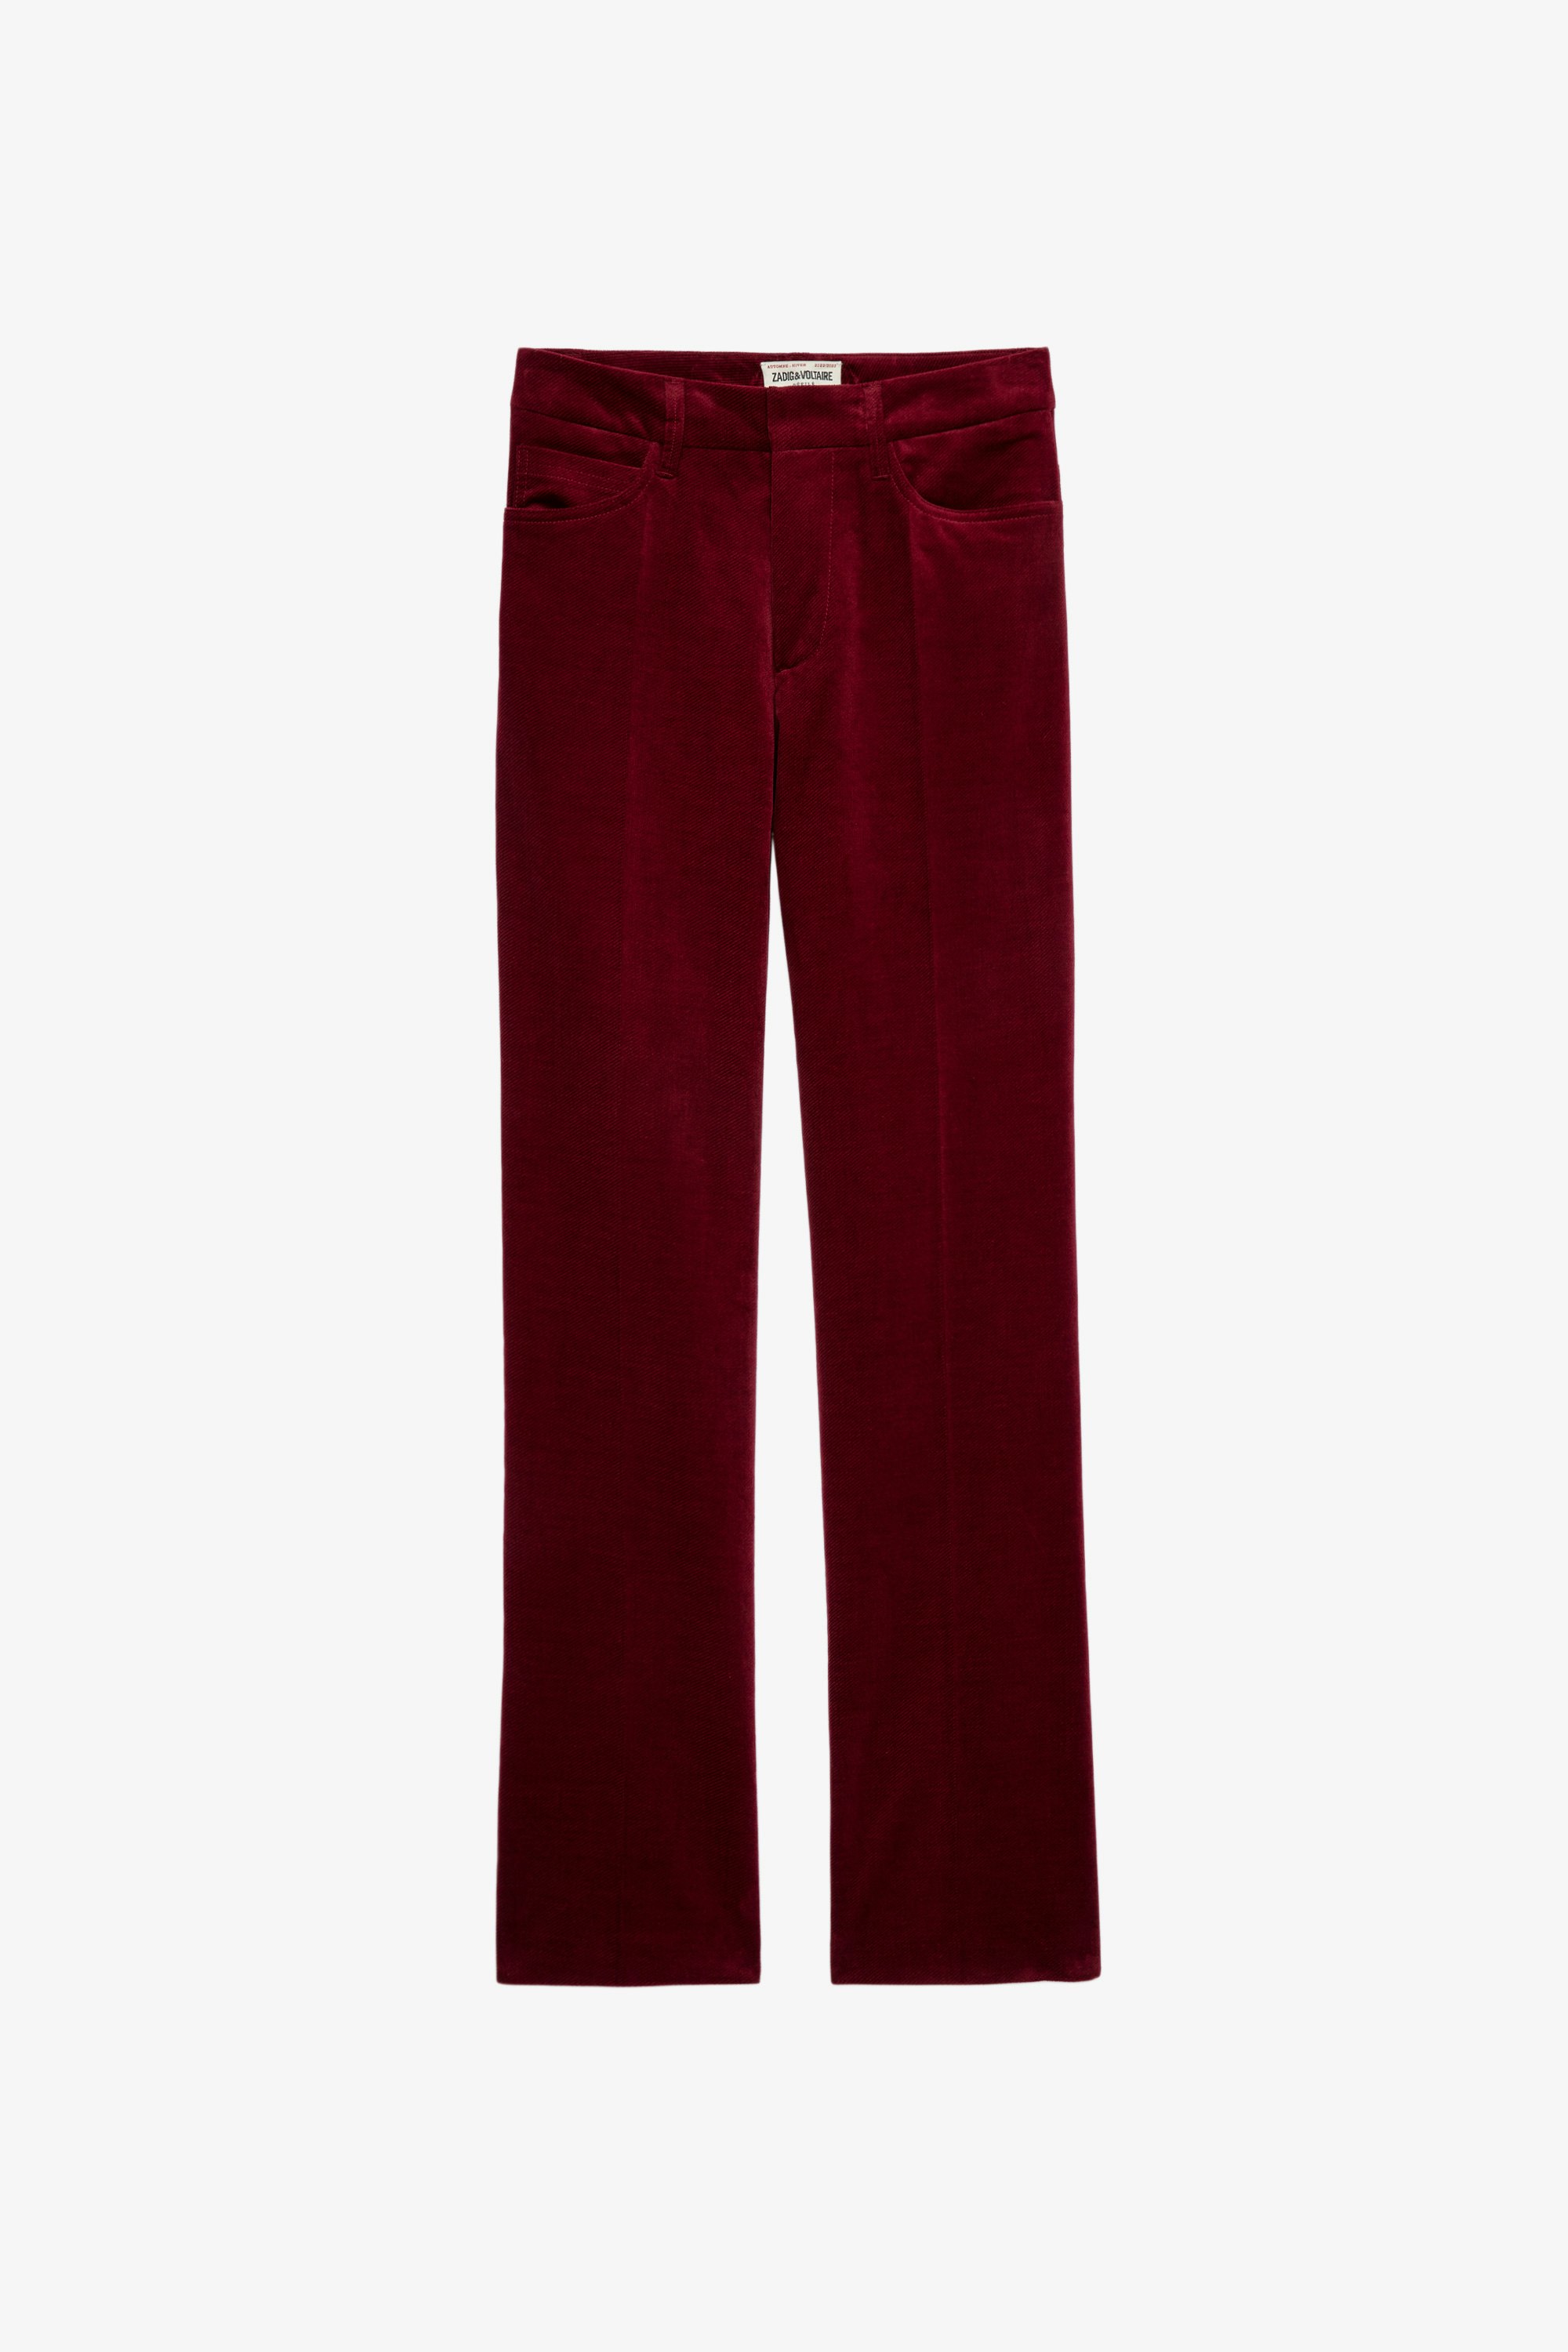 Pesto Velvet パンツ Women's red velvet wide-leg trousers